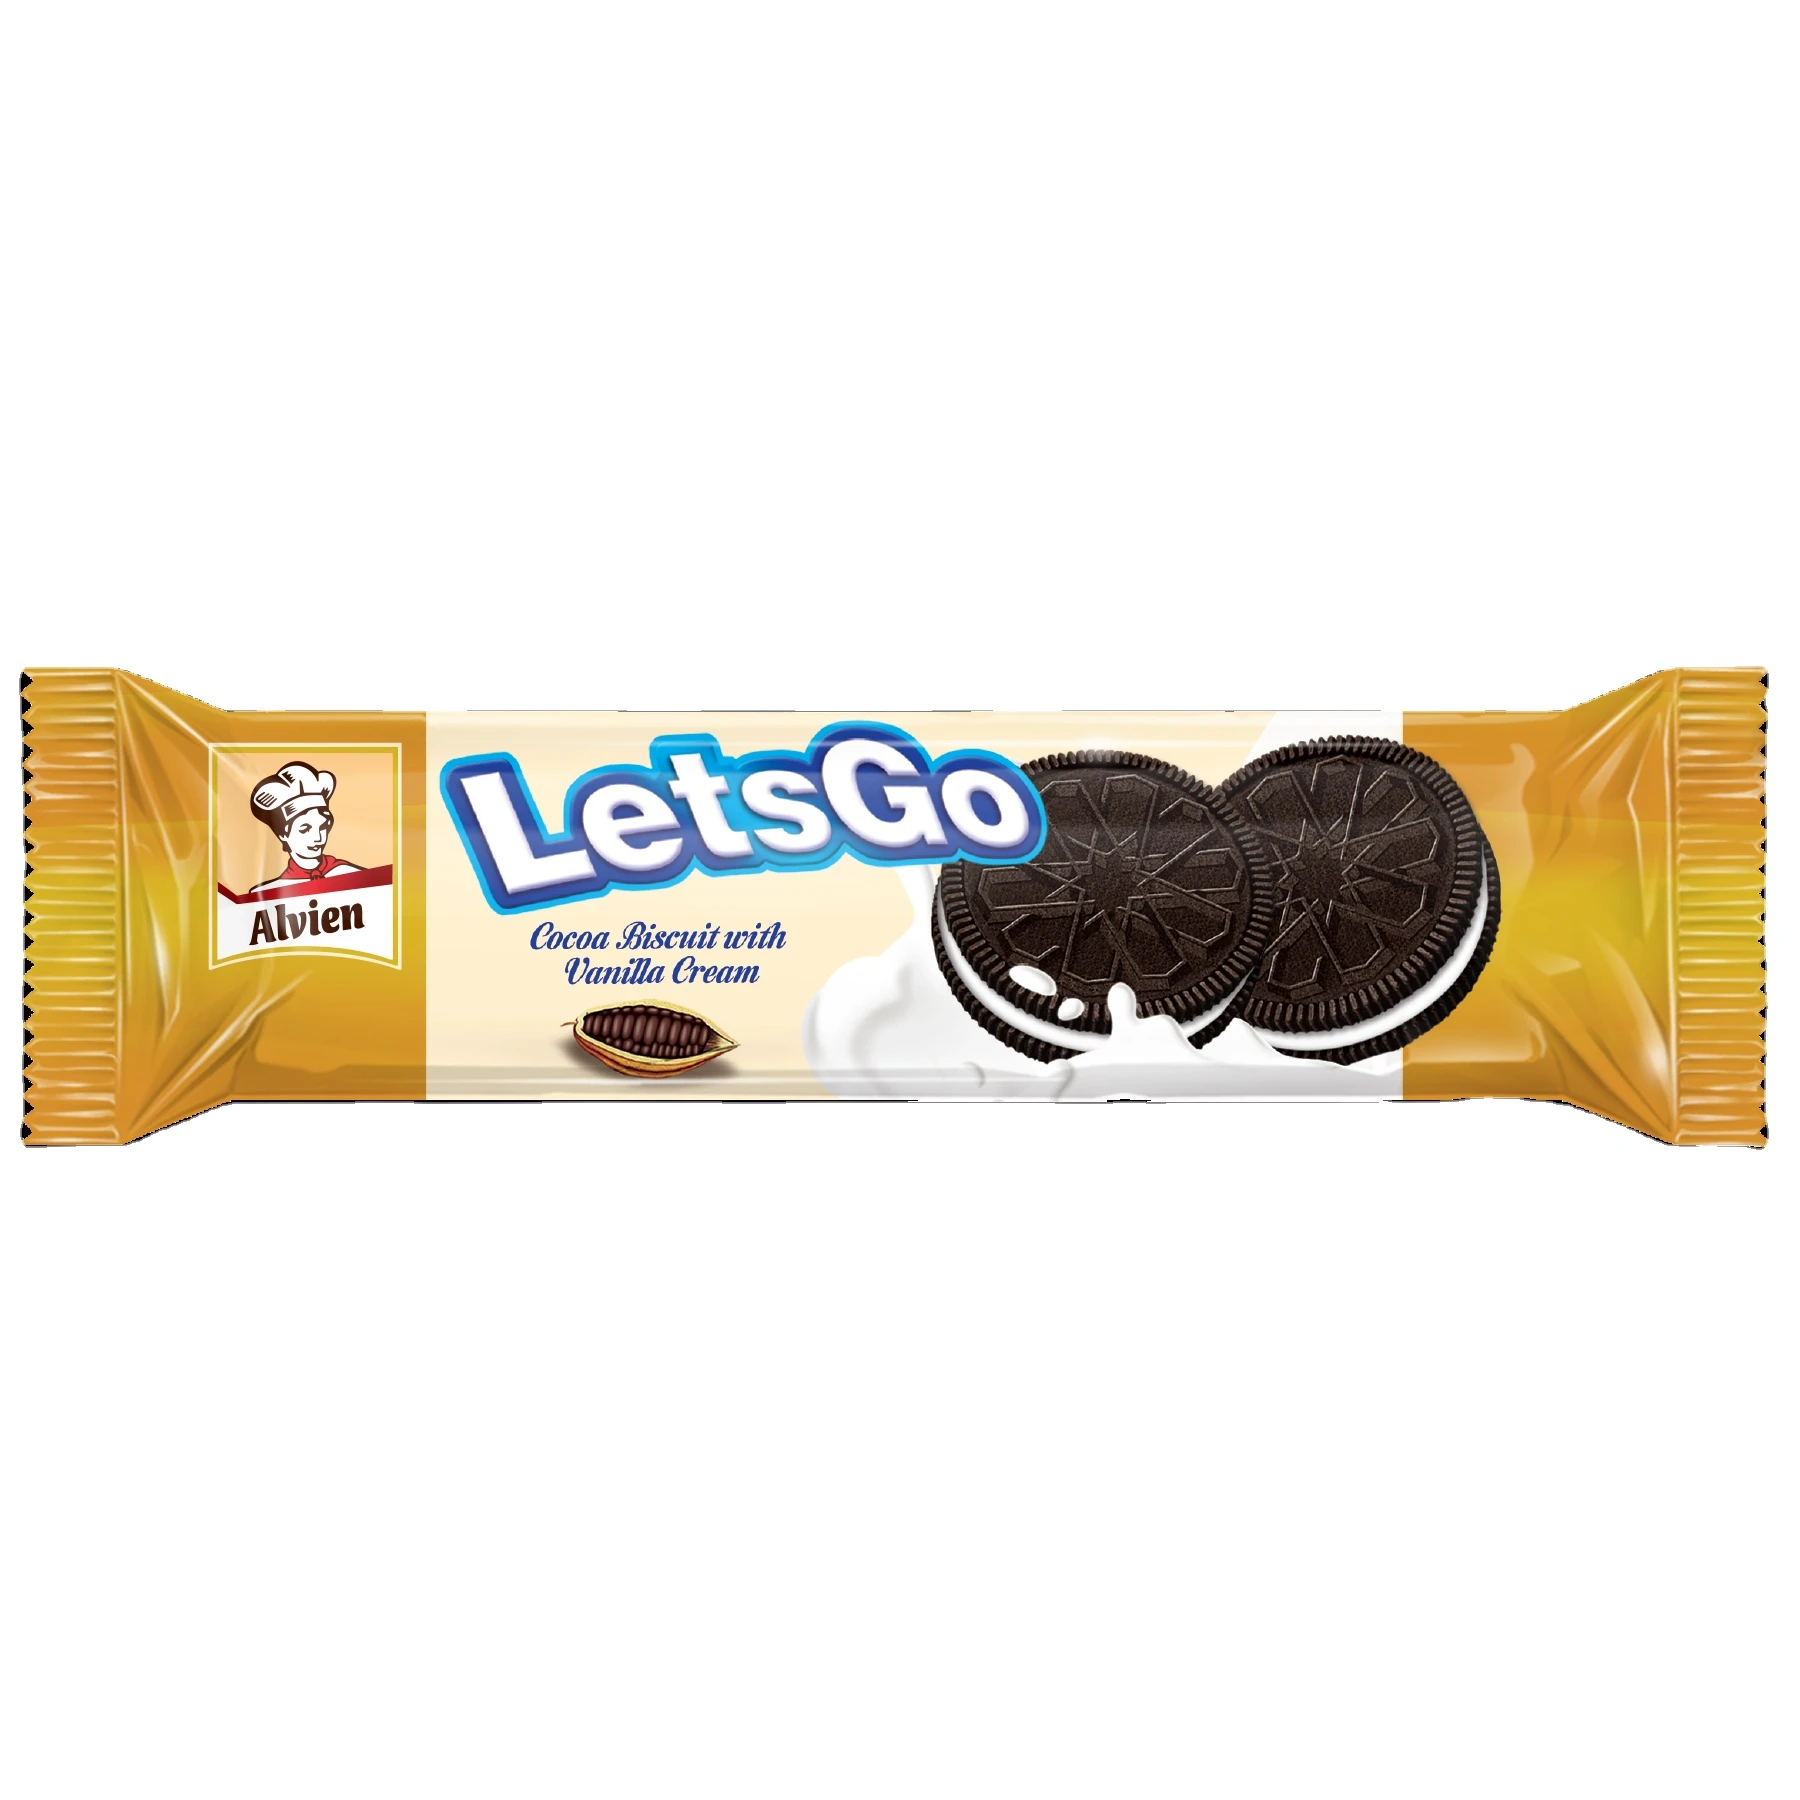 Alvien LetsGo Cocoa Biscuit with Vanilla Cream 72 Gram